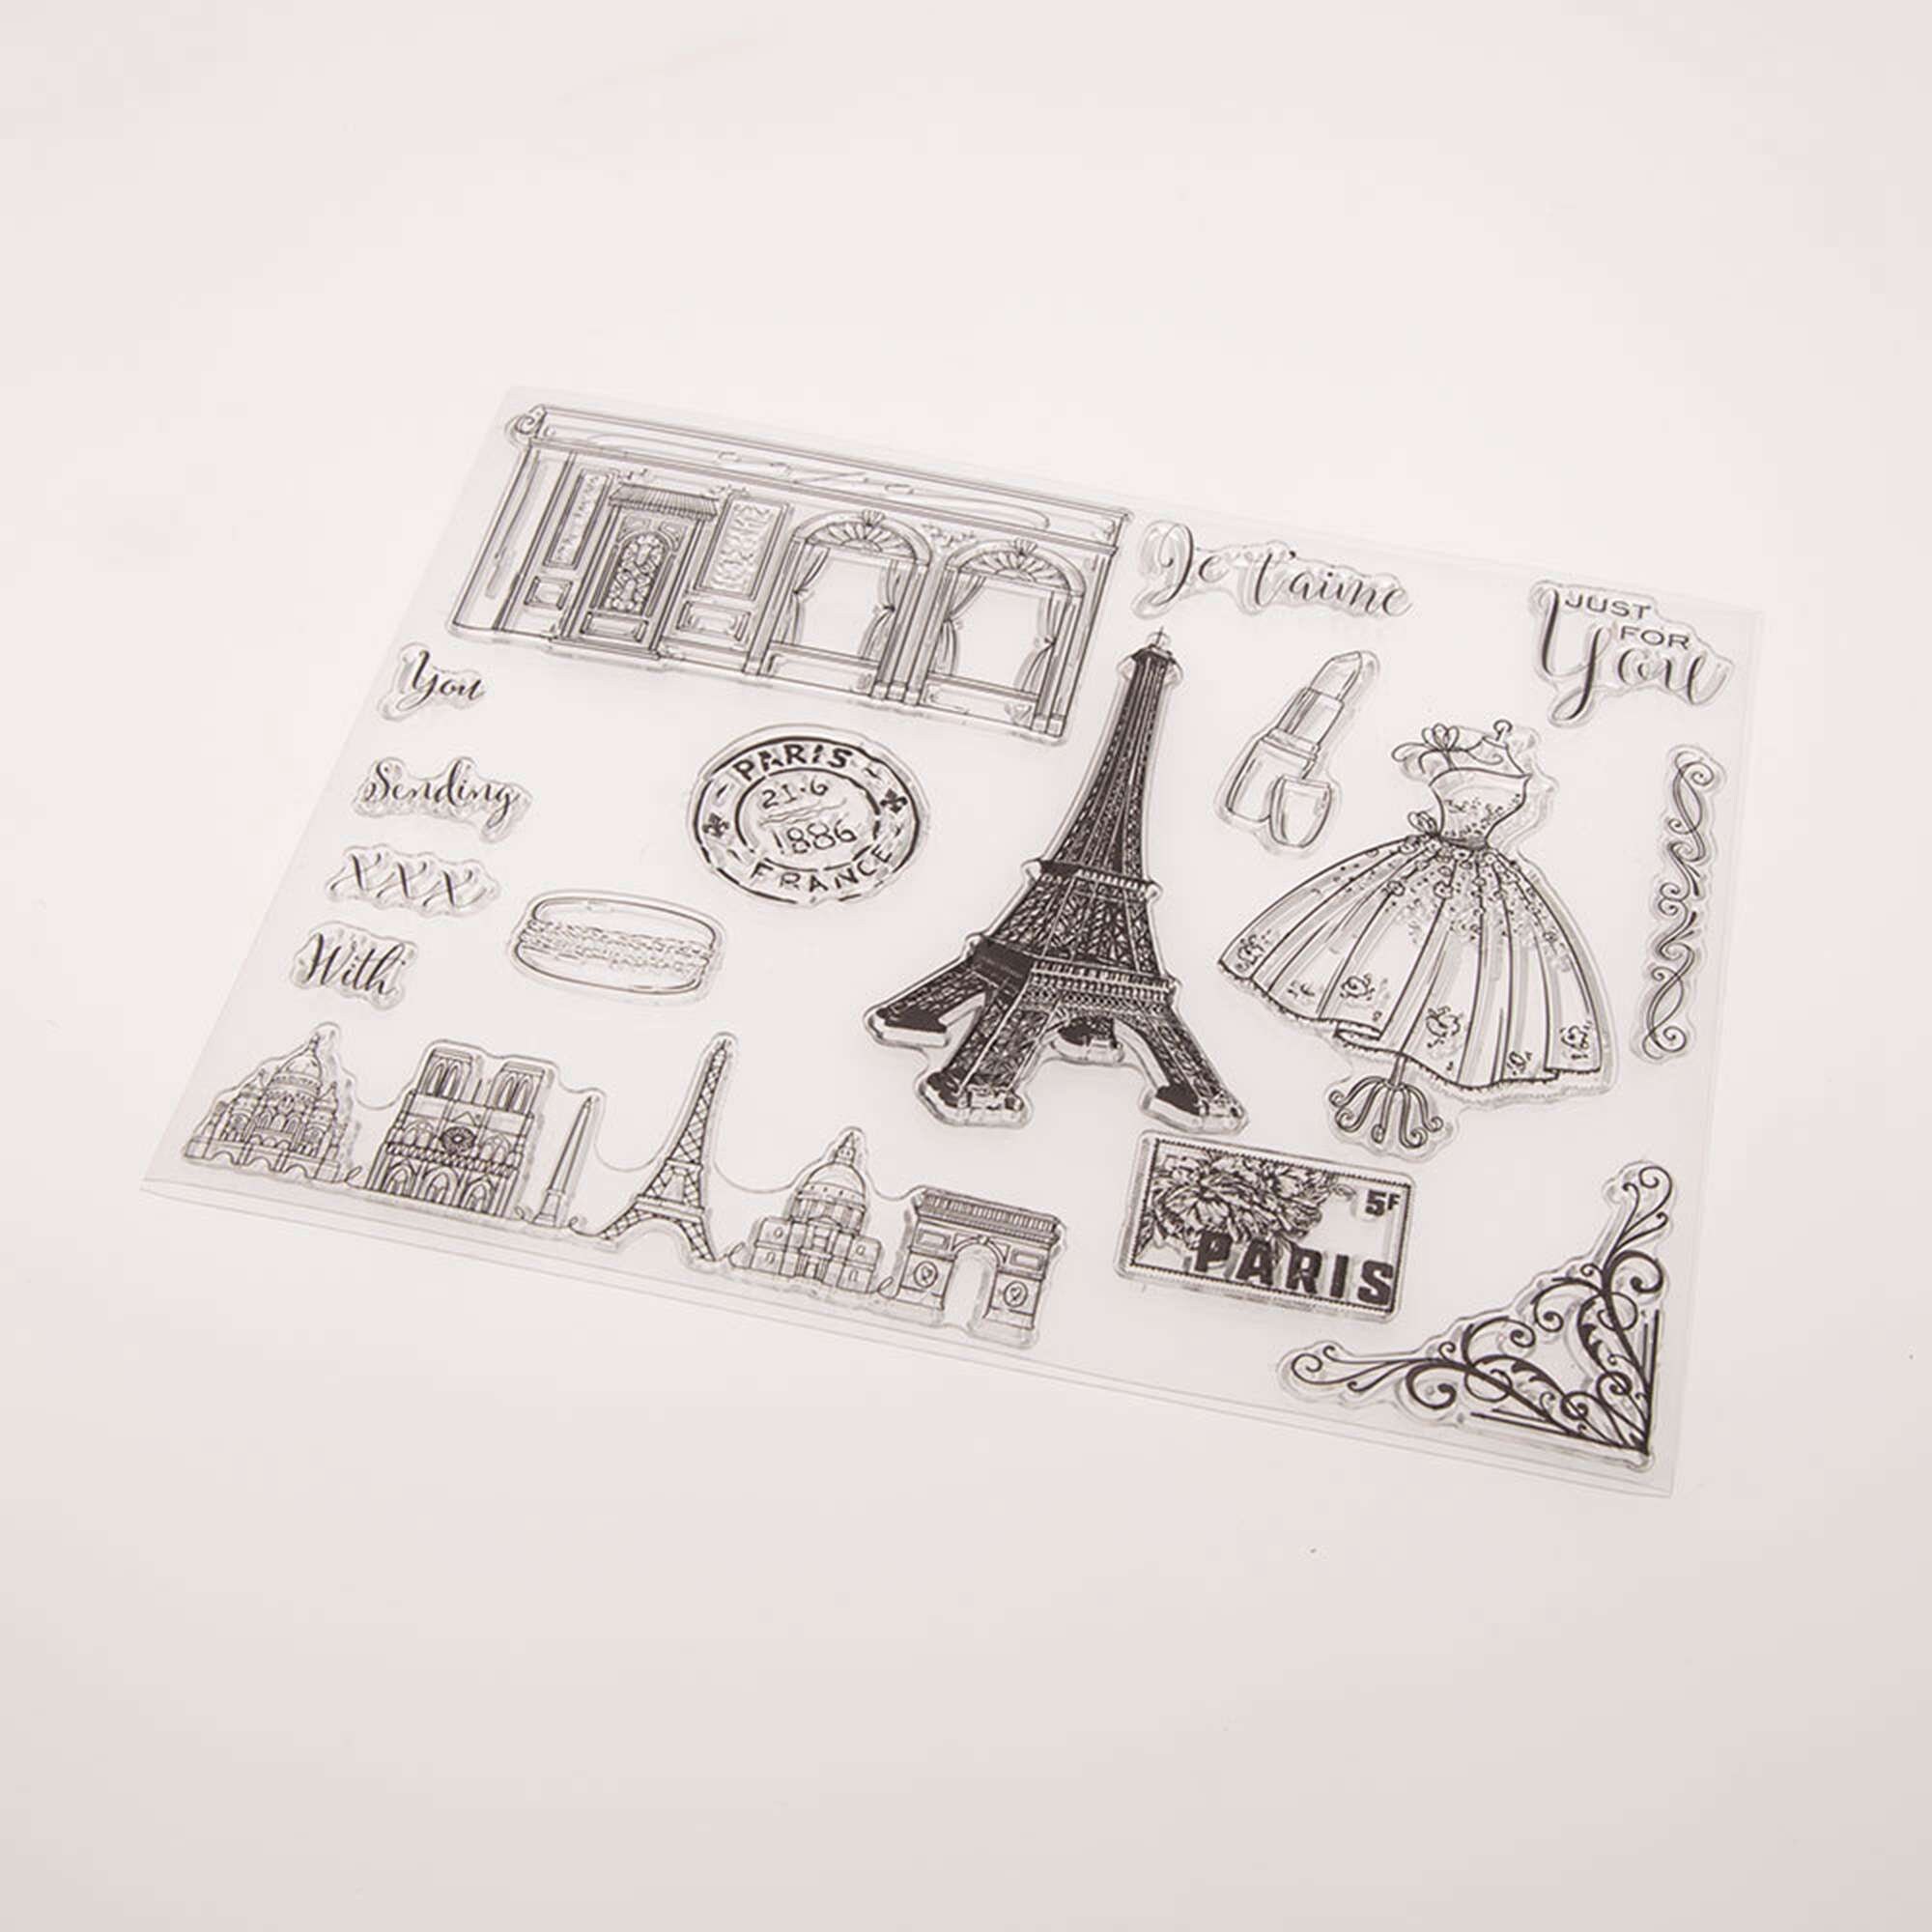 Deko-Hänger Eiffelturm Frankreich, 28 cm - Partybedarf Europäische Länder  Motto-Party Produkte 